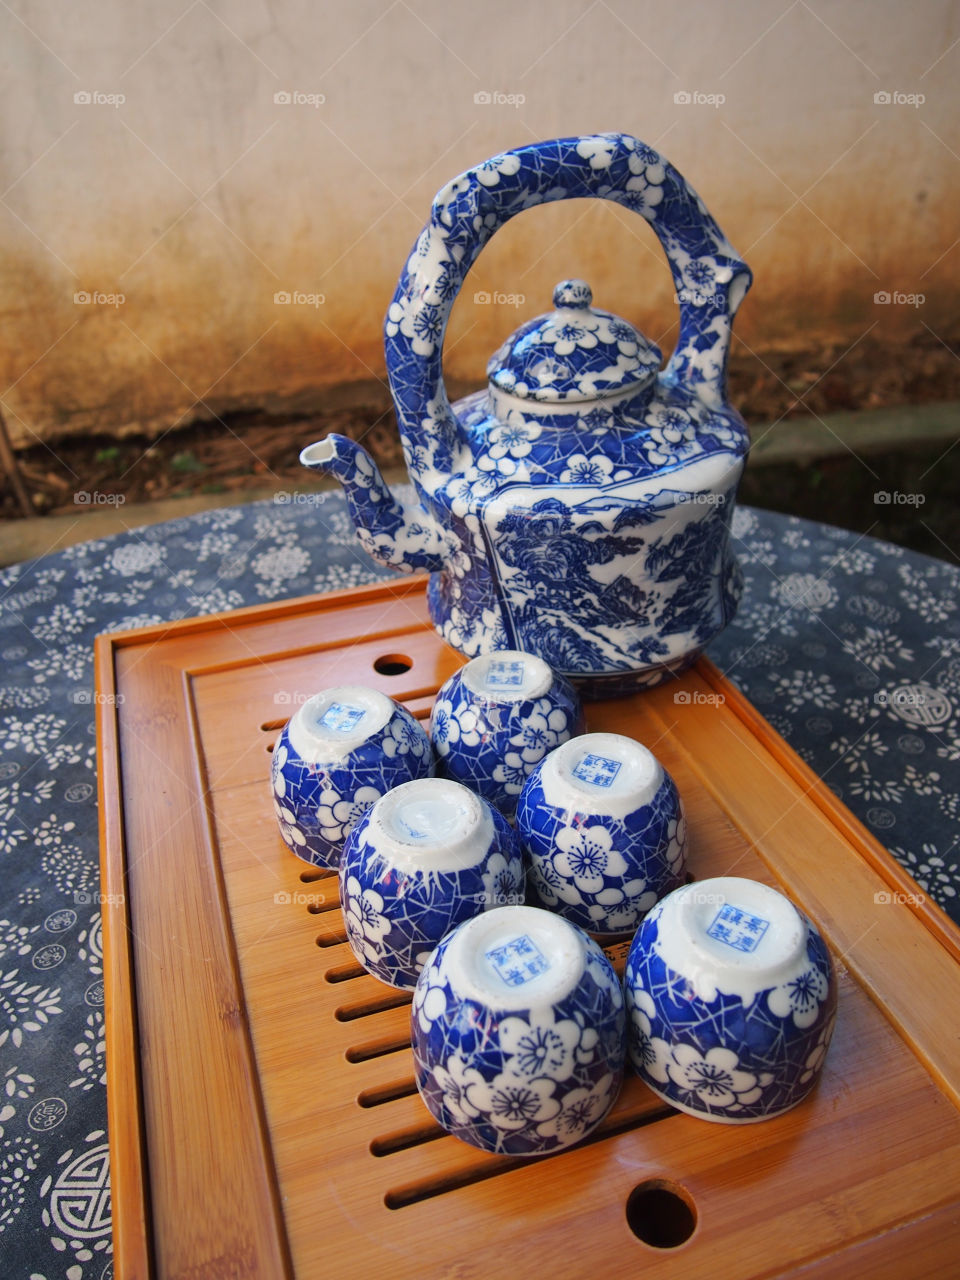 italy china tea set by nkokimura